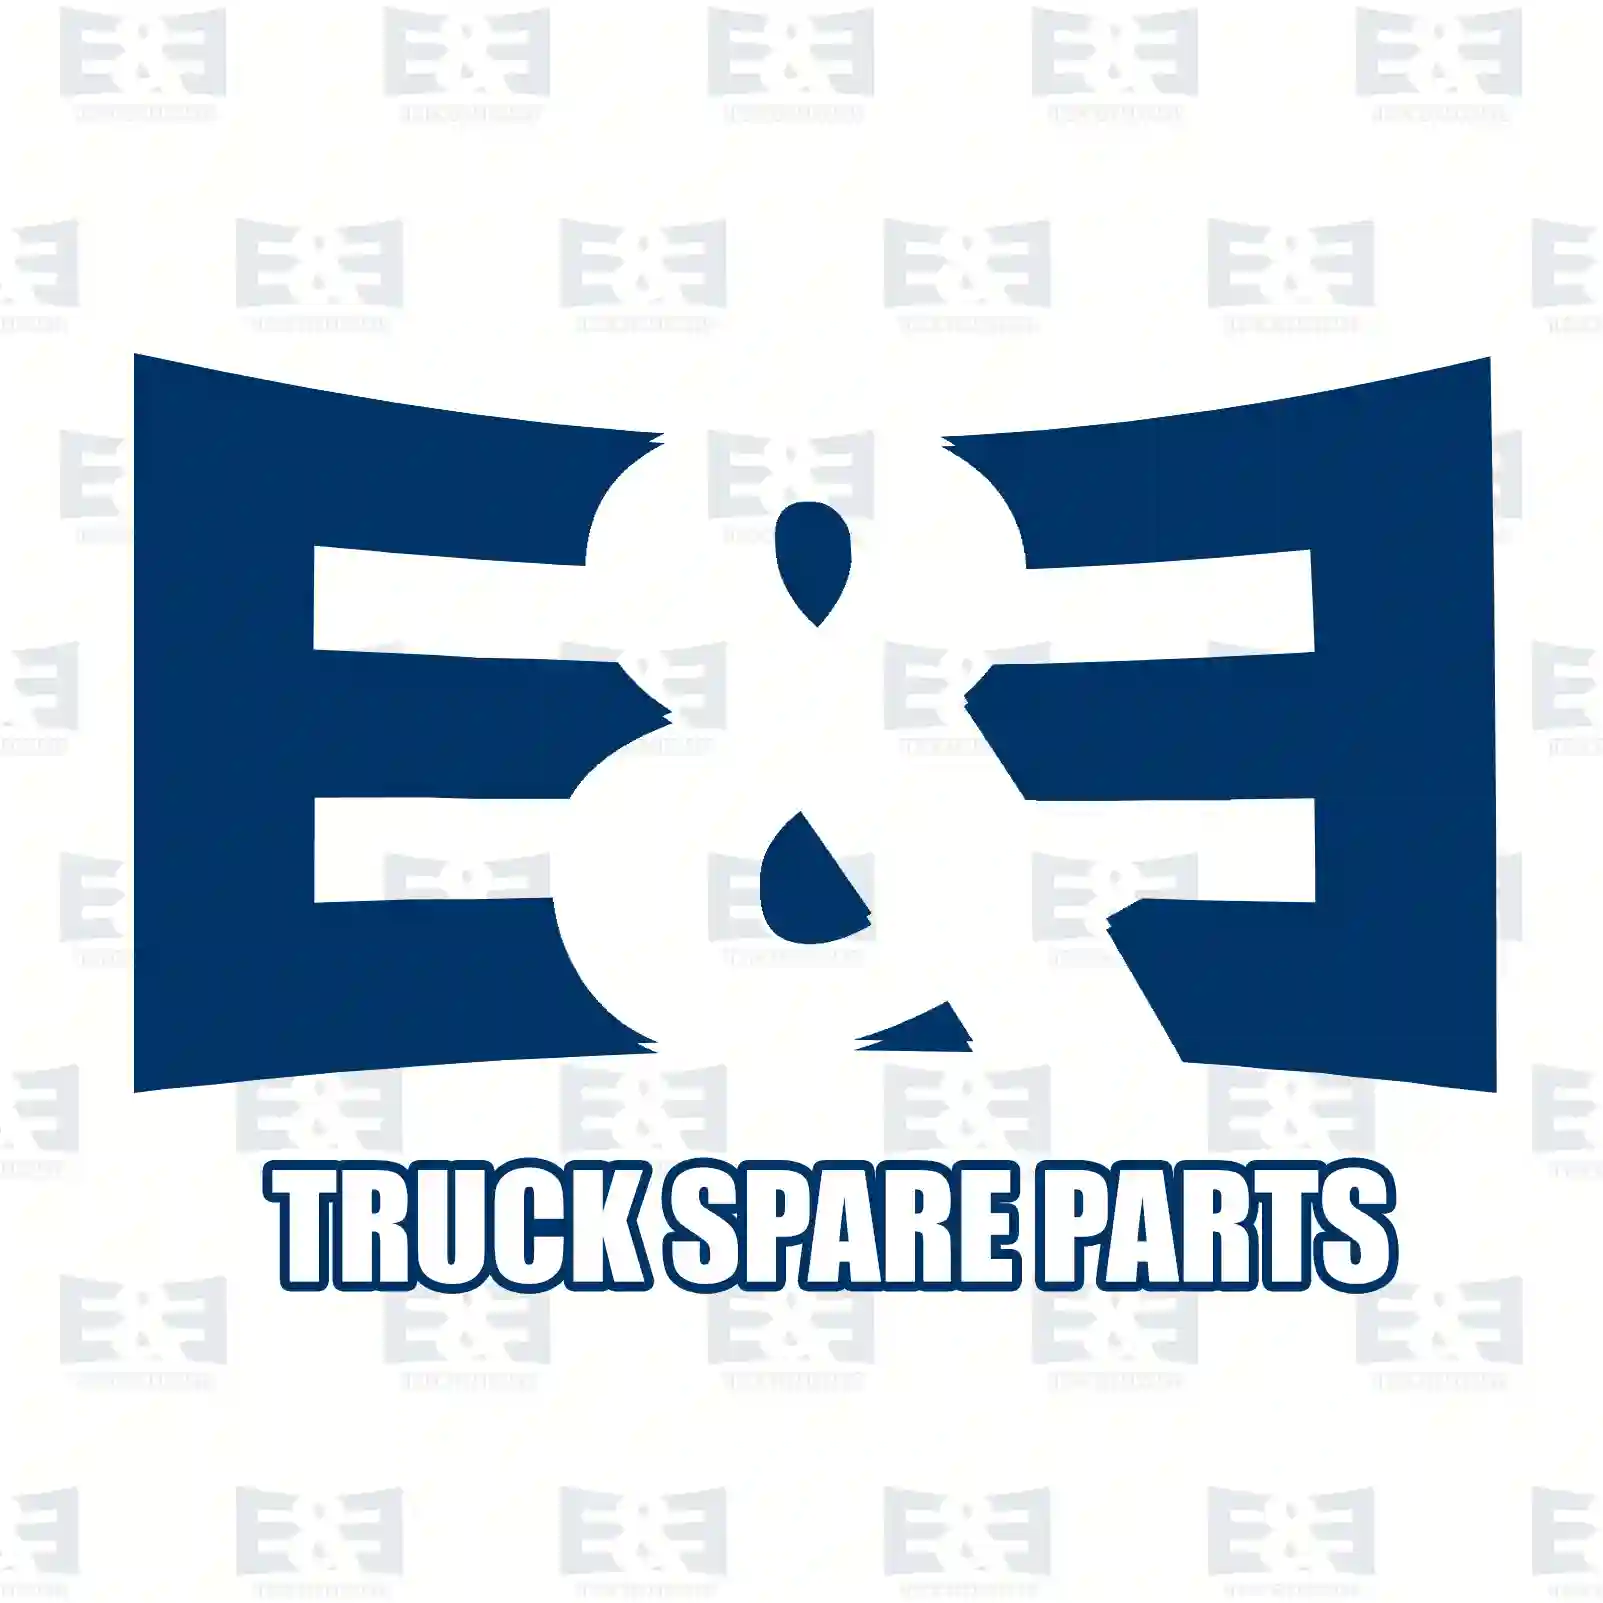 Cabin shock absorber, 2E2275083, 9603106955, 9603109255, 9613101255 ||  2E2275083 E&E Truck Spare Parts | Truck Spare Parts, Auotomotive Spare Parts Cabin shock absorber, 2E2275083, 9603106955, 9603109255, 9613101255 ||  2E2275083 E&E Truck Spare Parts | Truck Spare Parts, Auotomotive Spare Parts